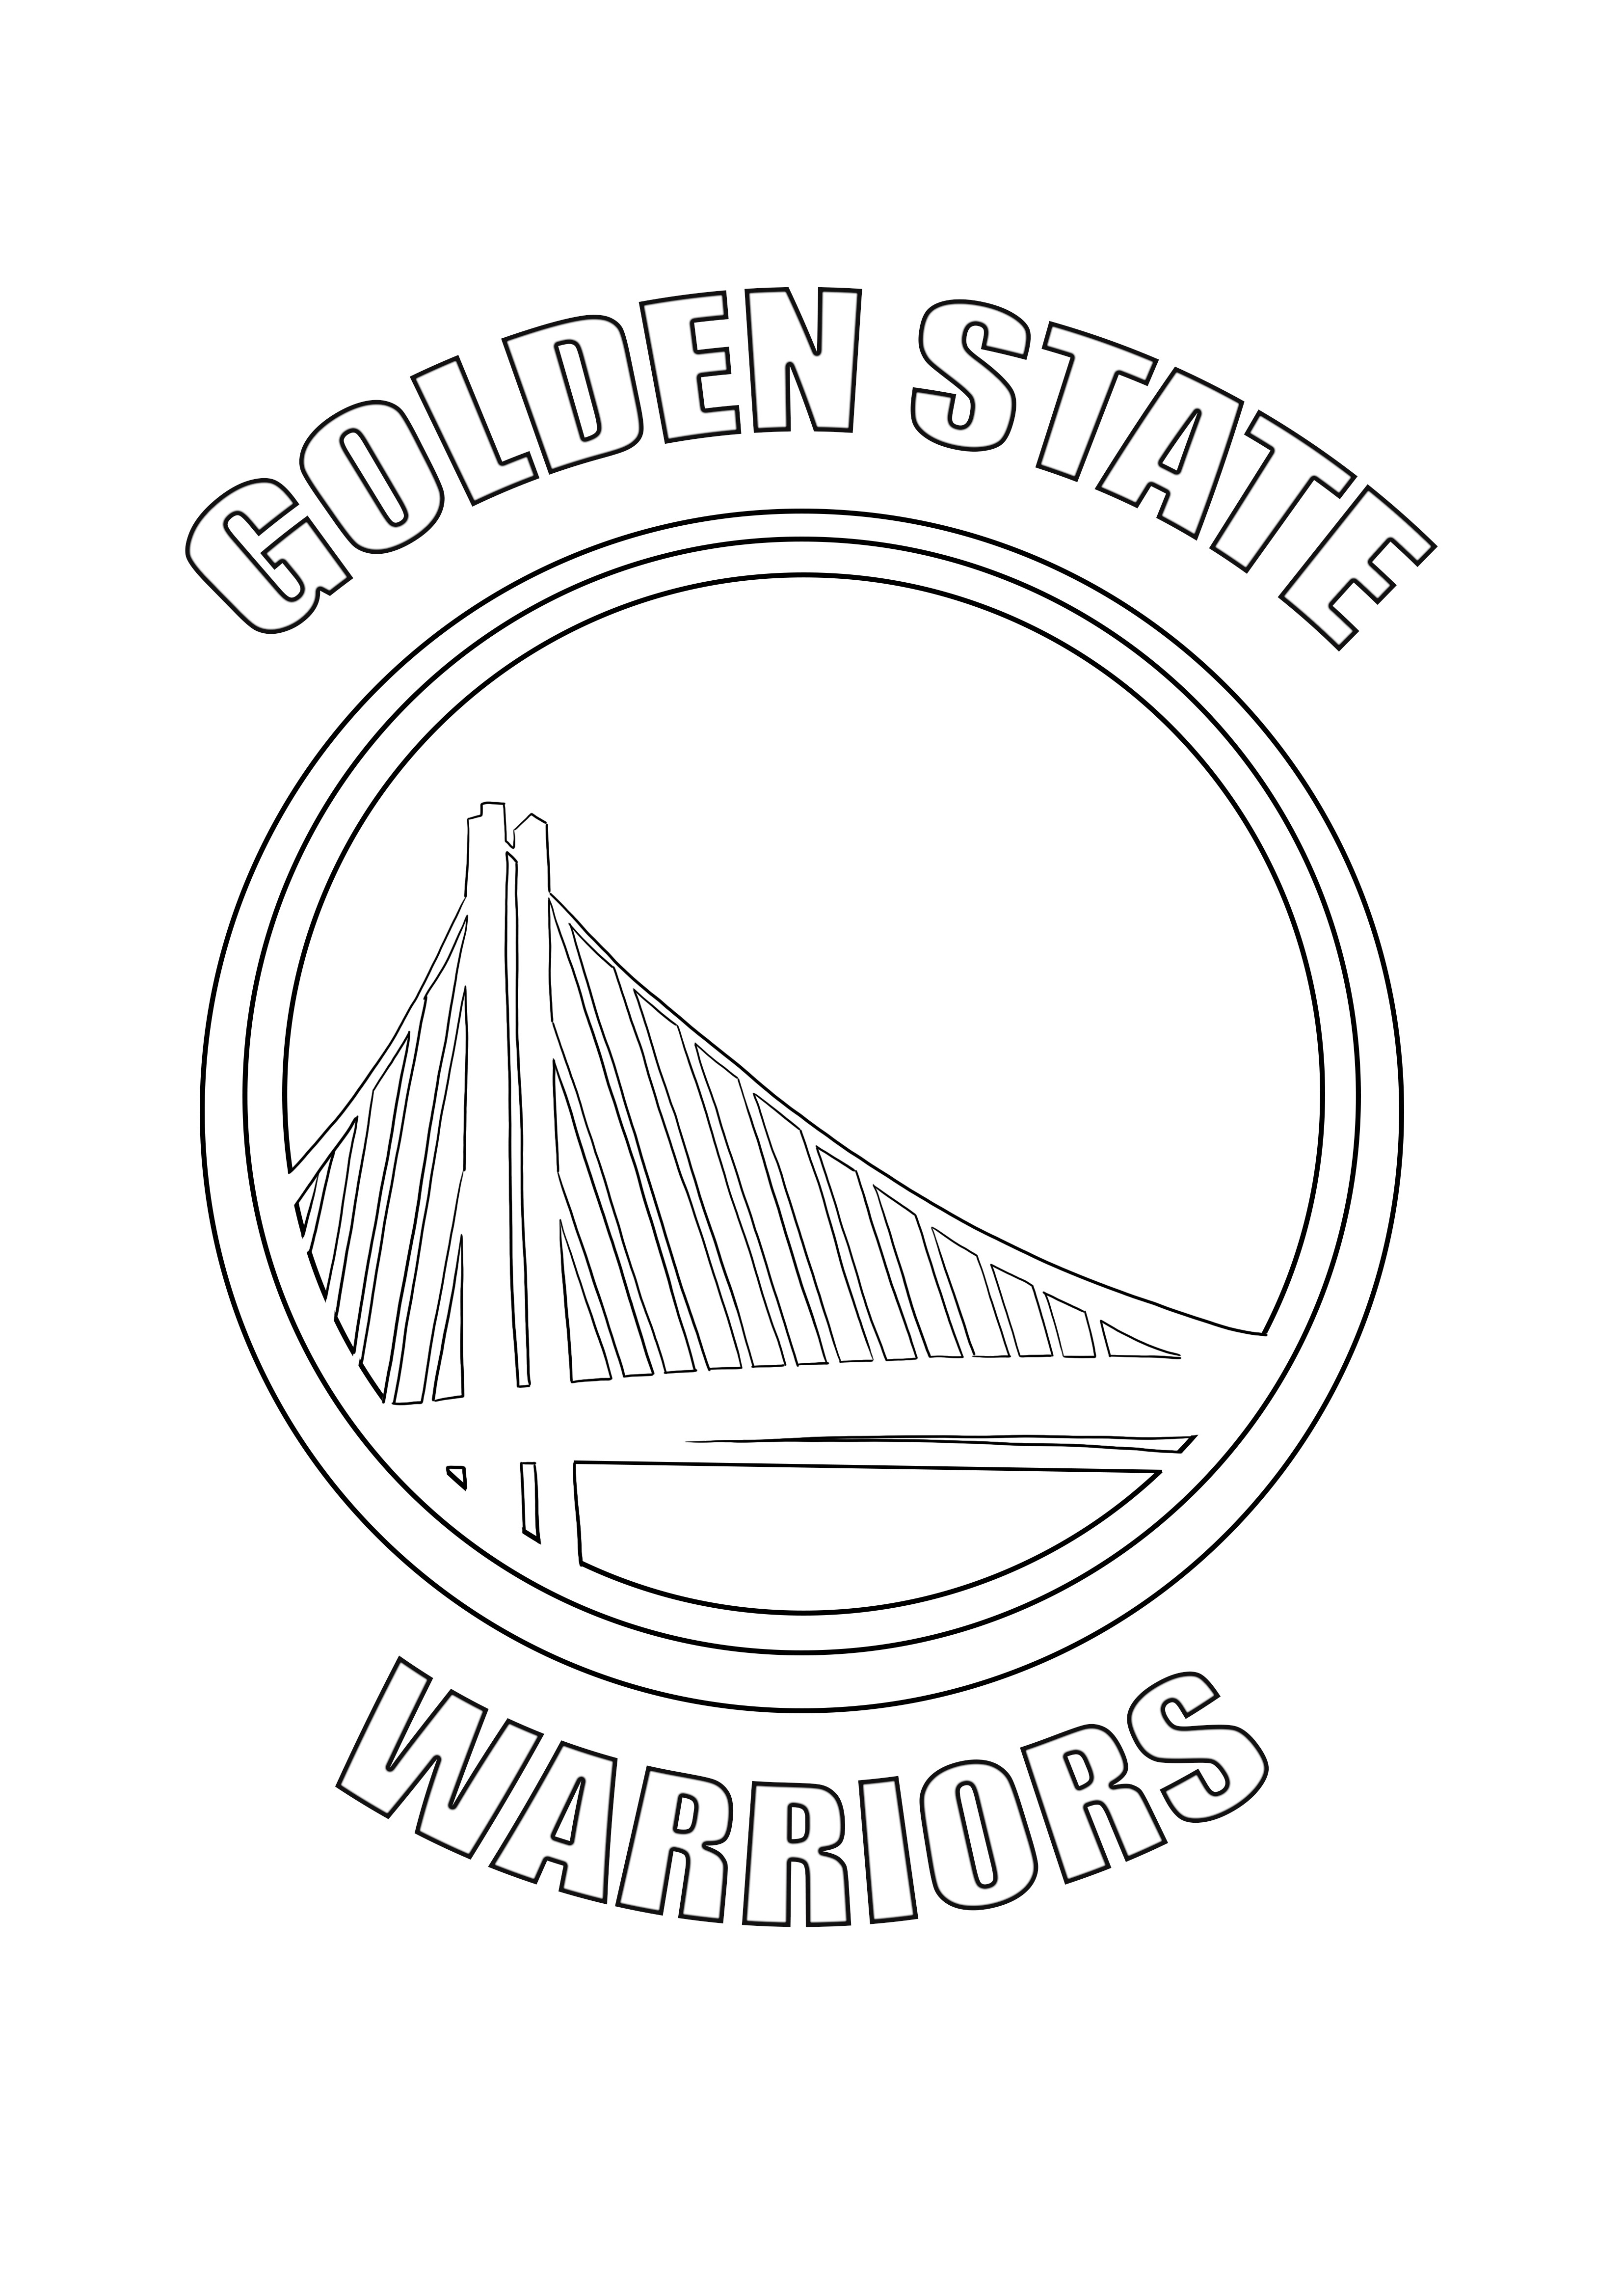 Logotipo do Golden State Warriors para imprimir e colorir gratuitamente